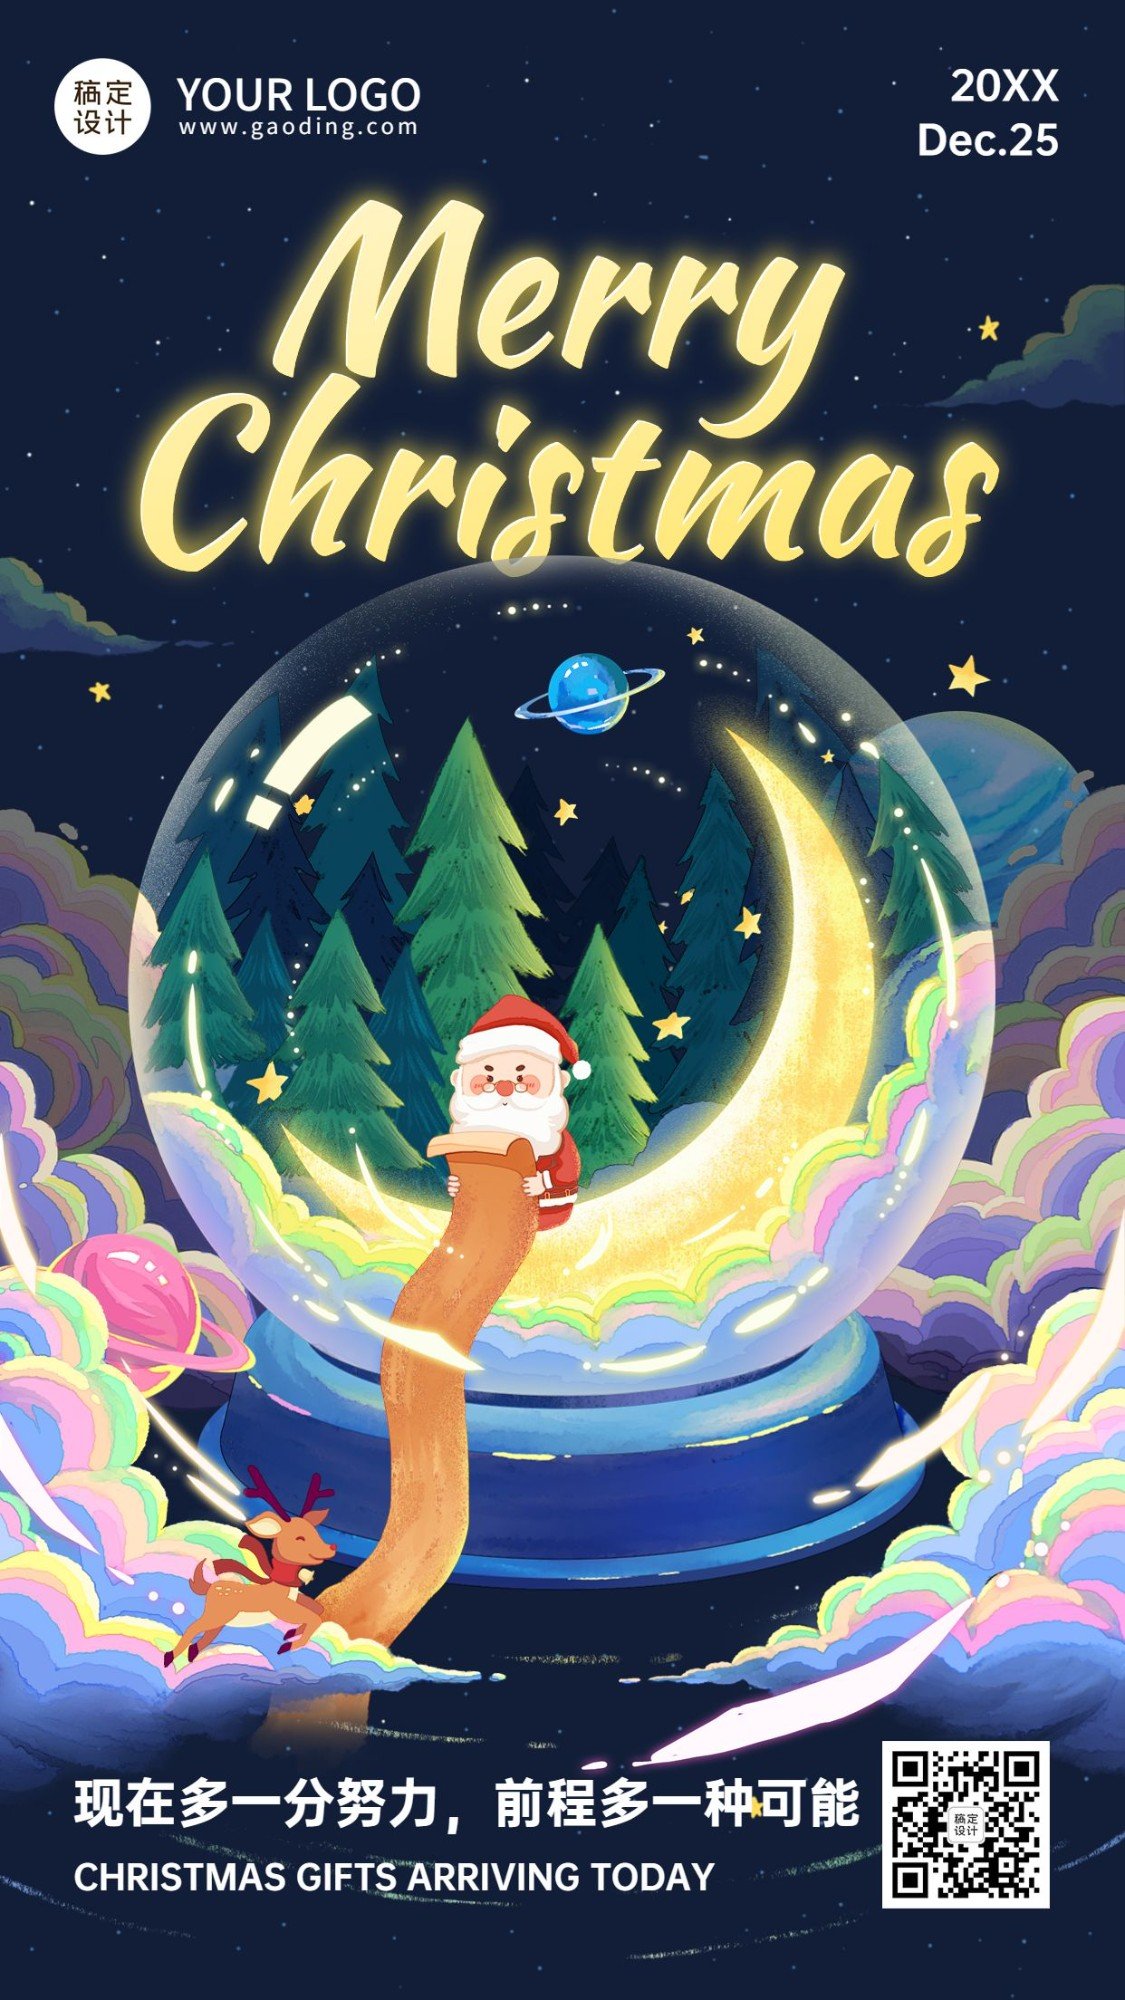 圣诞节祝福浪漫水晶球插画竖版海报预览效果